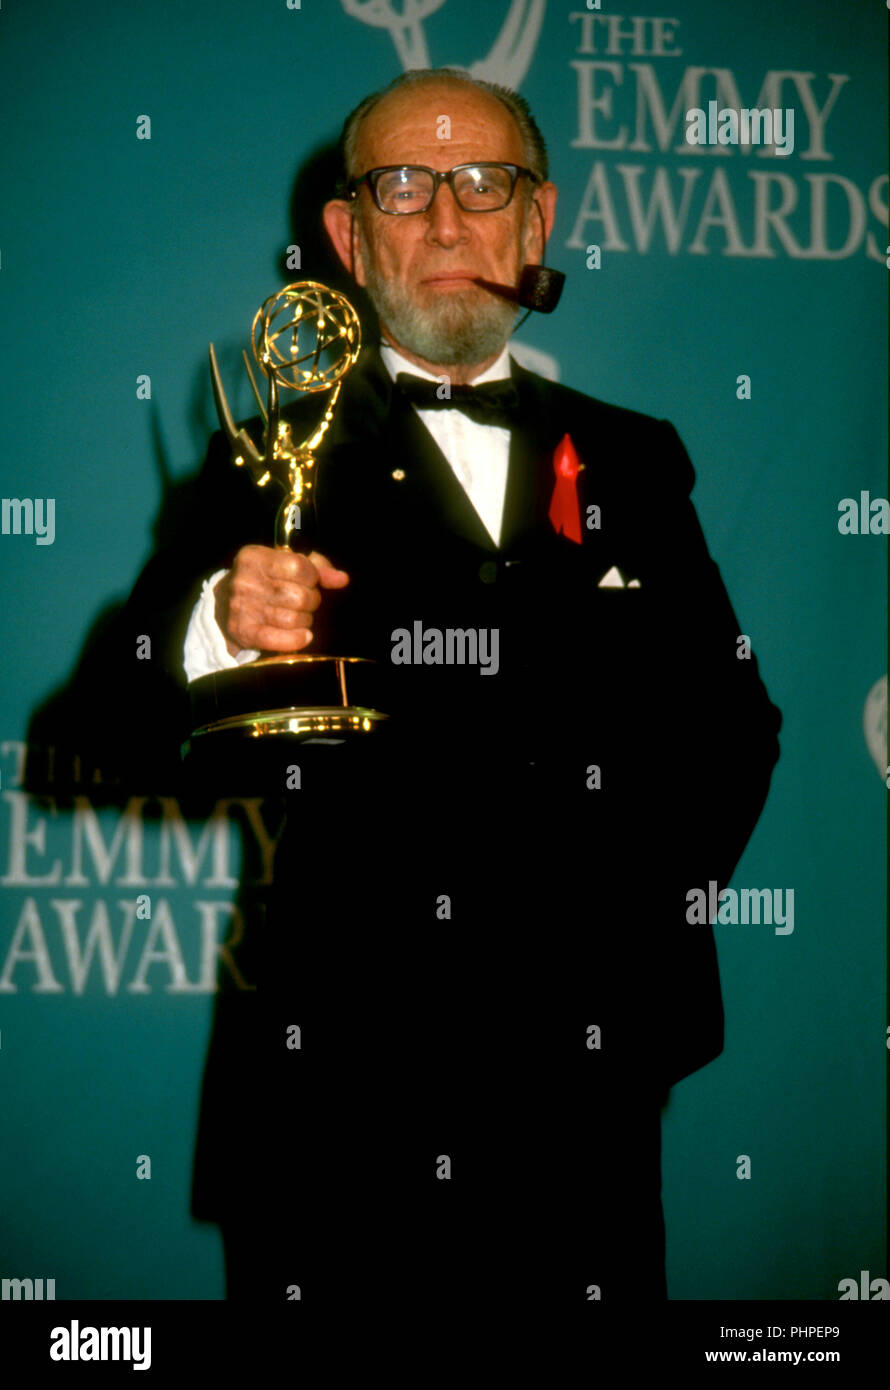 PASADENA, CA - le 30 août : l'acteur Hume Cronyn assiste à la 44th Annual Primetime Emmy Awards le 30 août 1992 à Pasadena Civic Auditorium à Pasadena, en Californie. Photo de Barry King/Alamy Stock Photo Banque D'Images